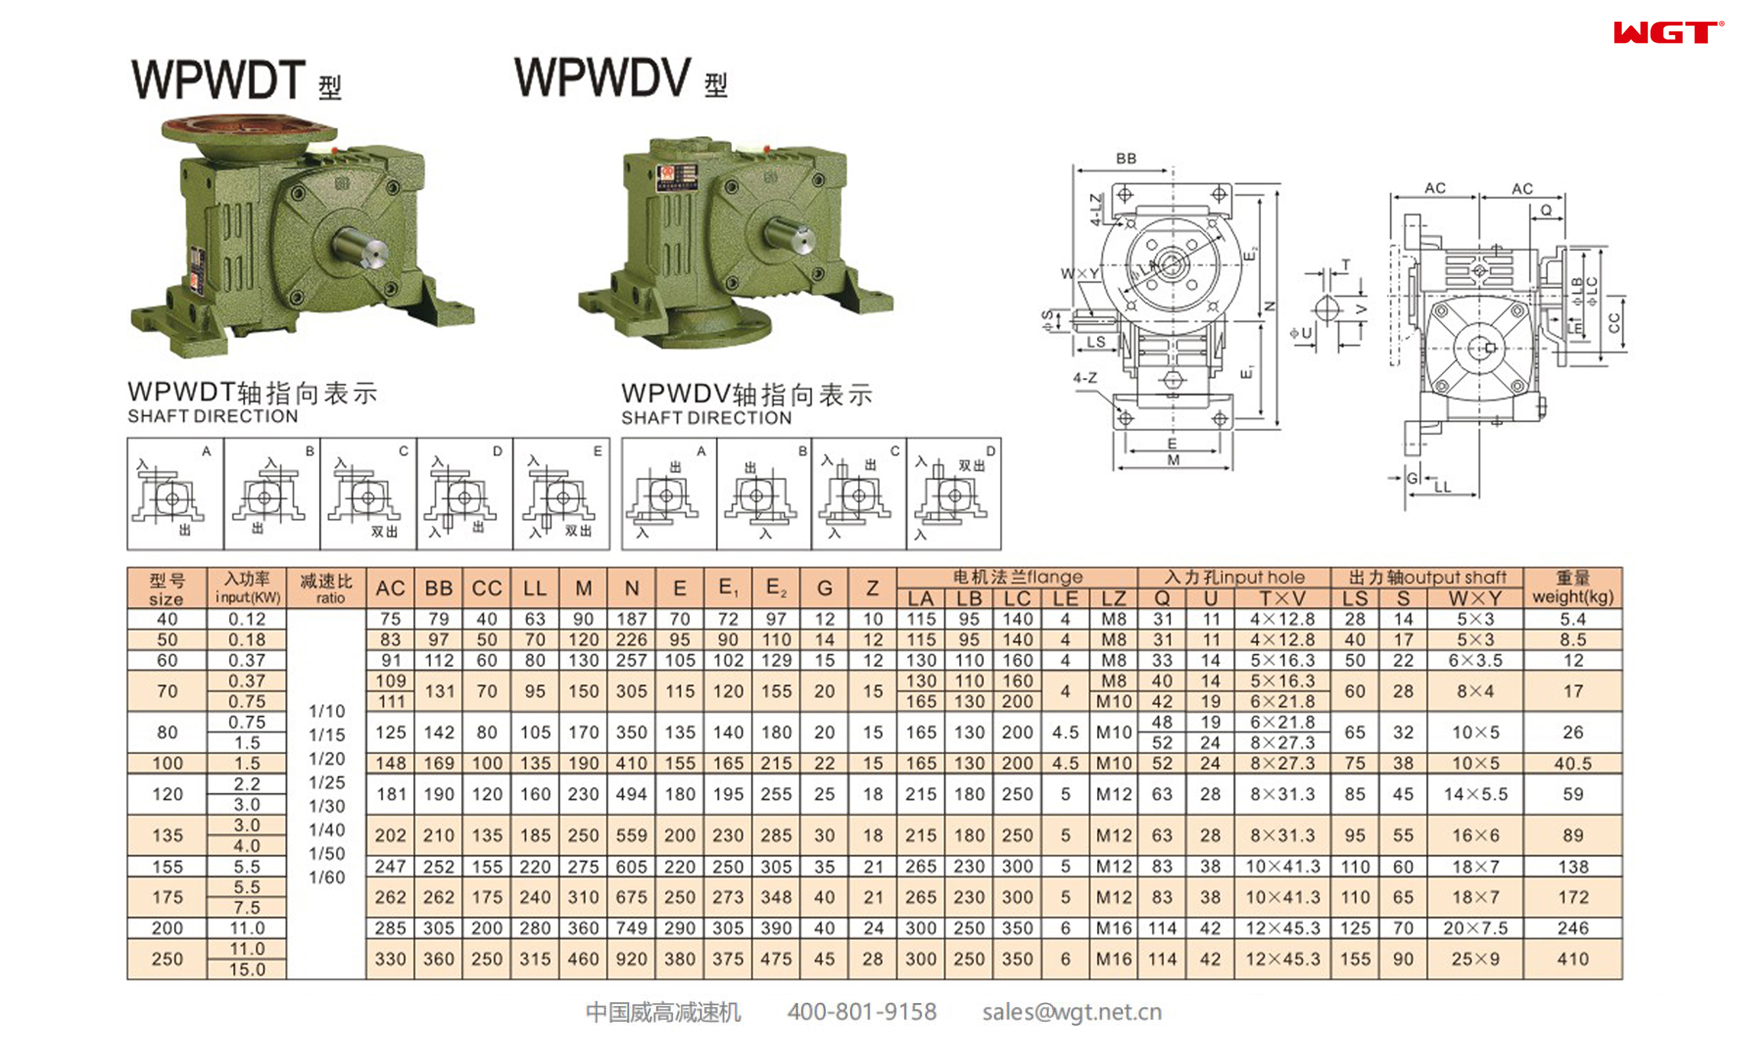 WPWDT WPWDV50 Червячный редуктор Универсальный редуктор